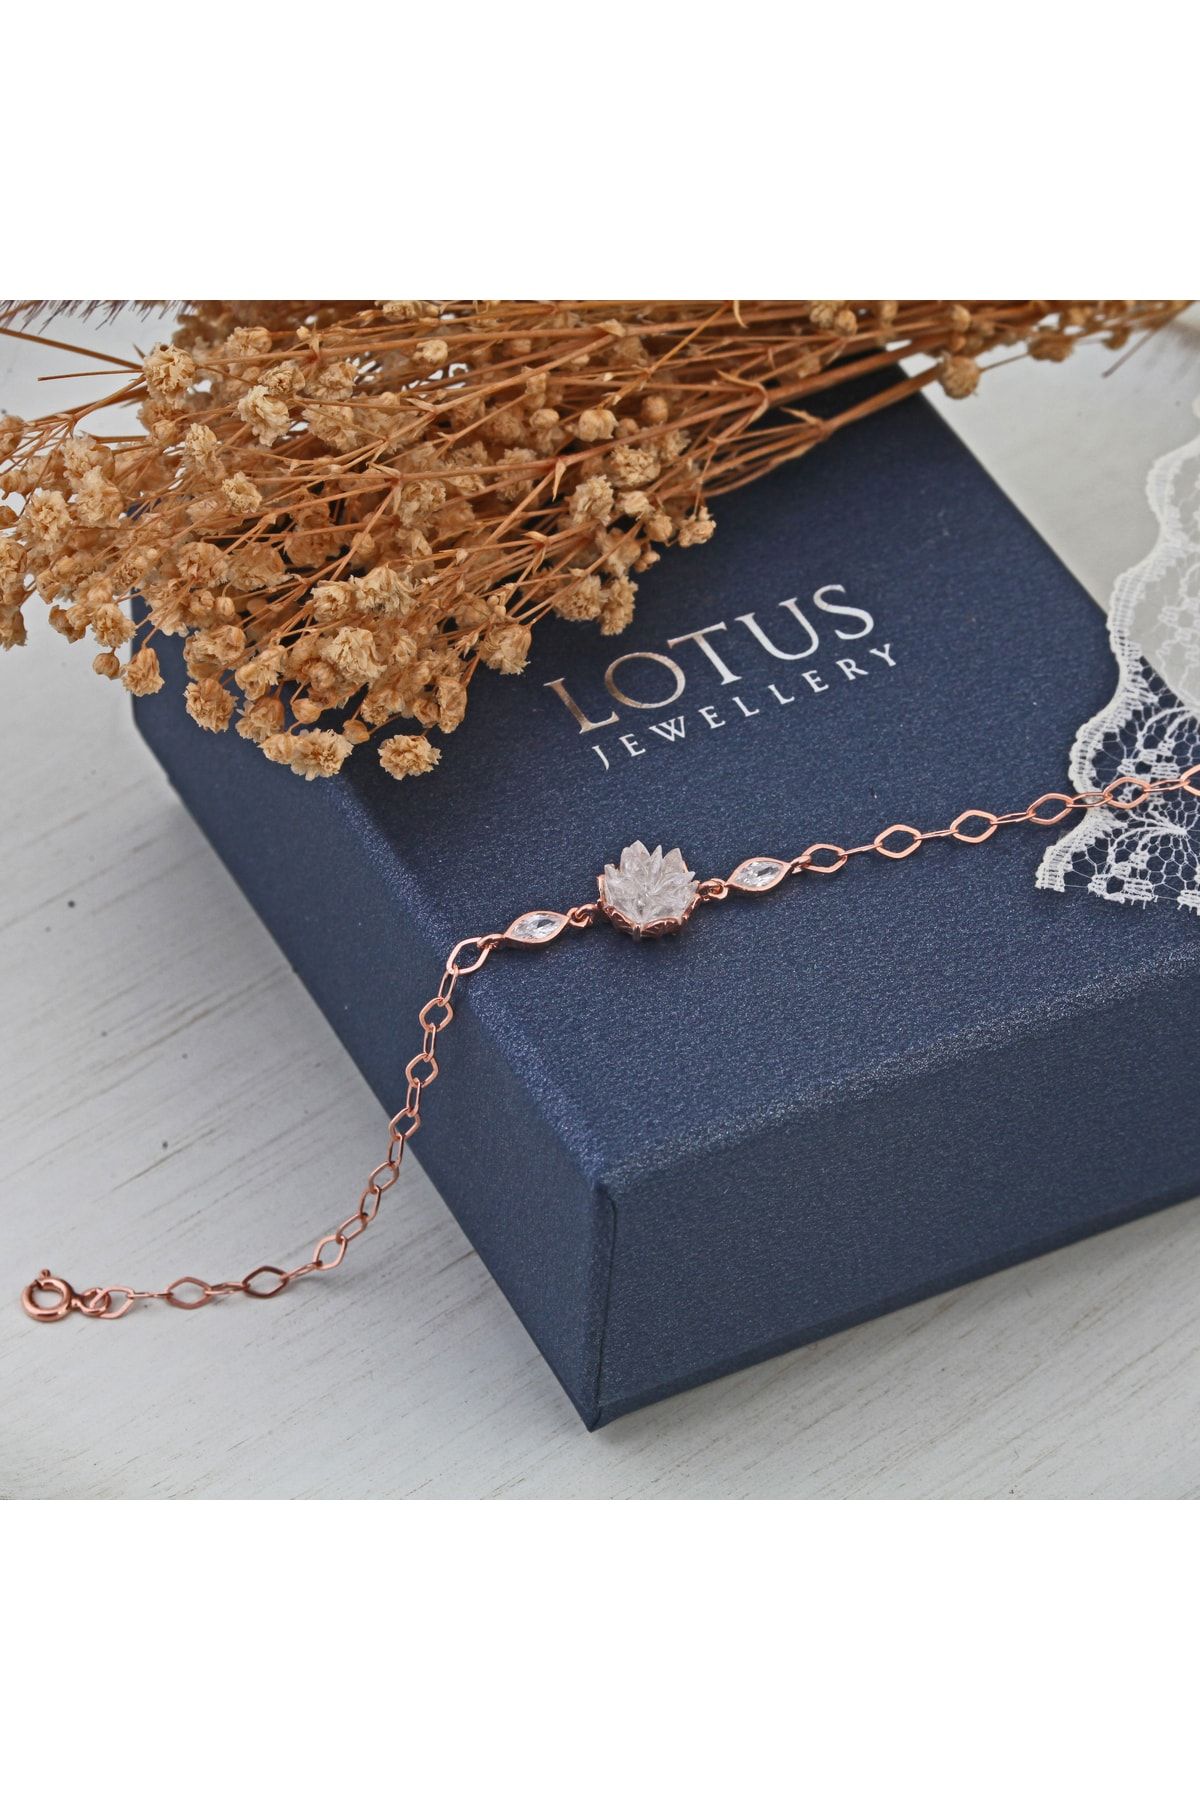 LOTUS JW Lotus Çiçeği Bileklik - 925 Ayar Gümüş Bileklik